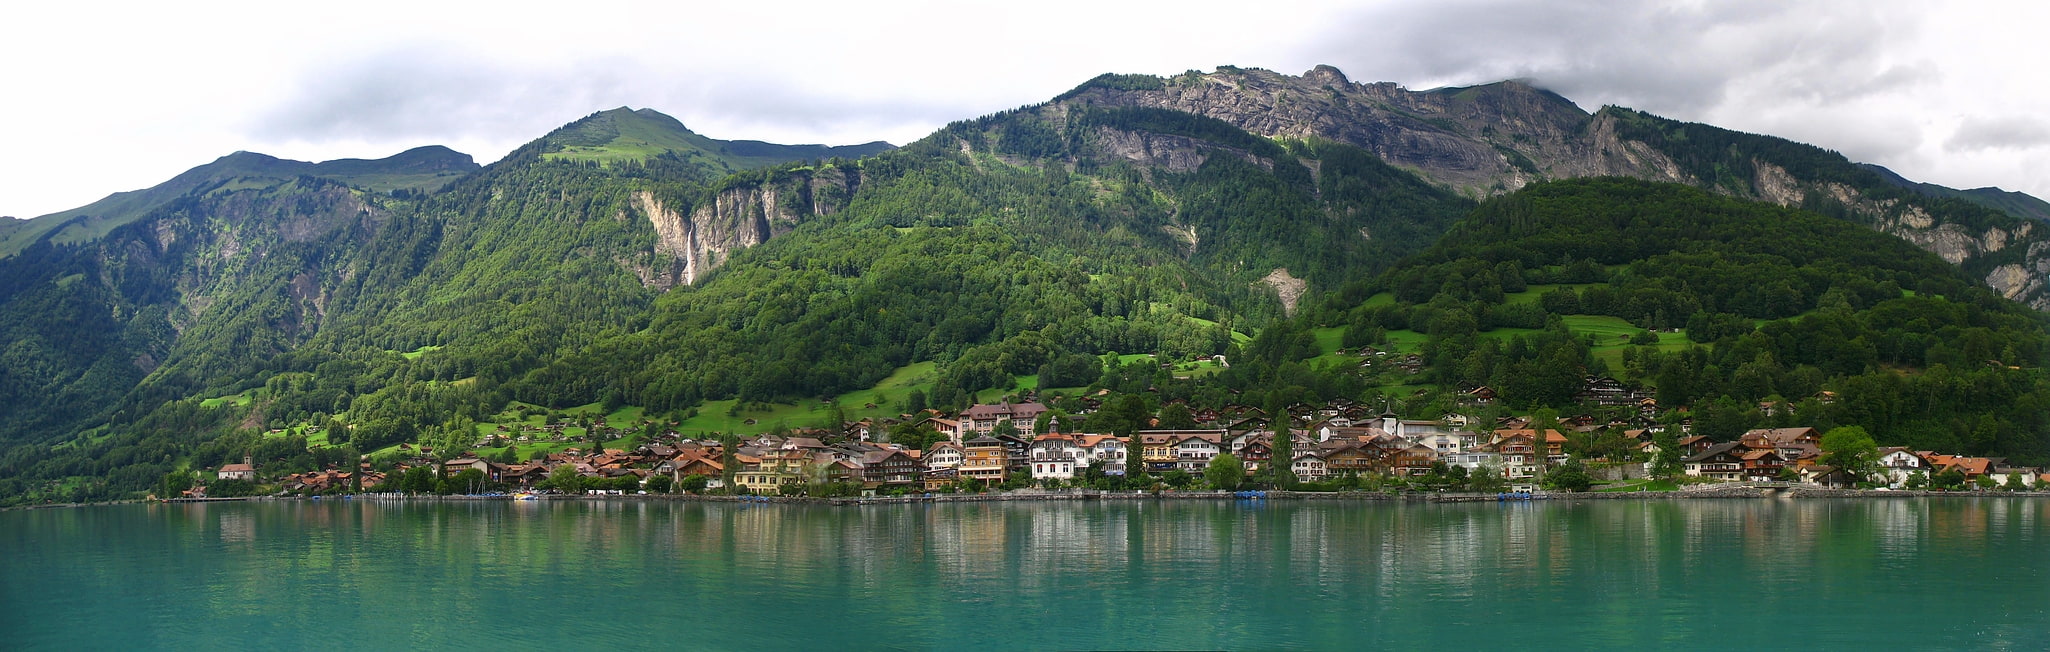 Brienz, Switzerland